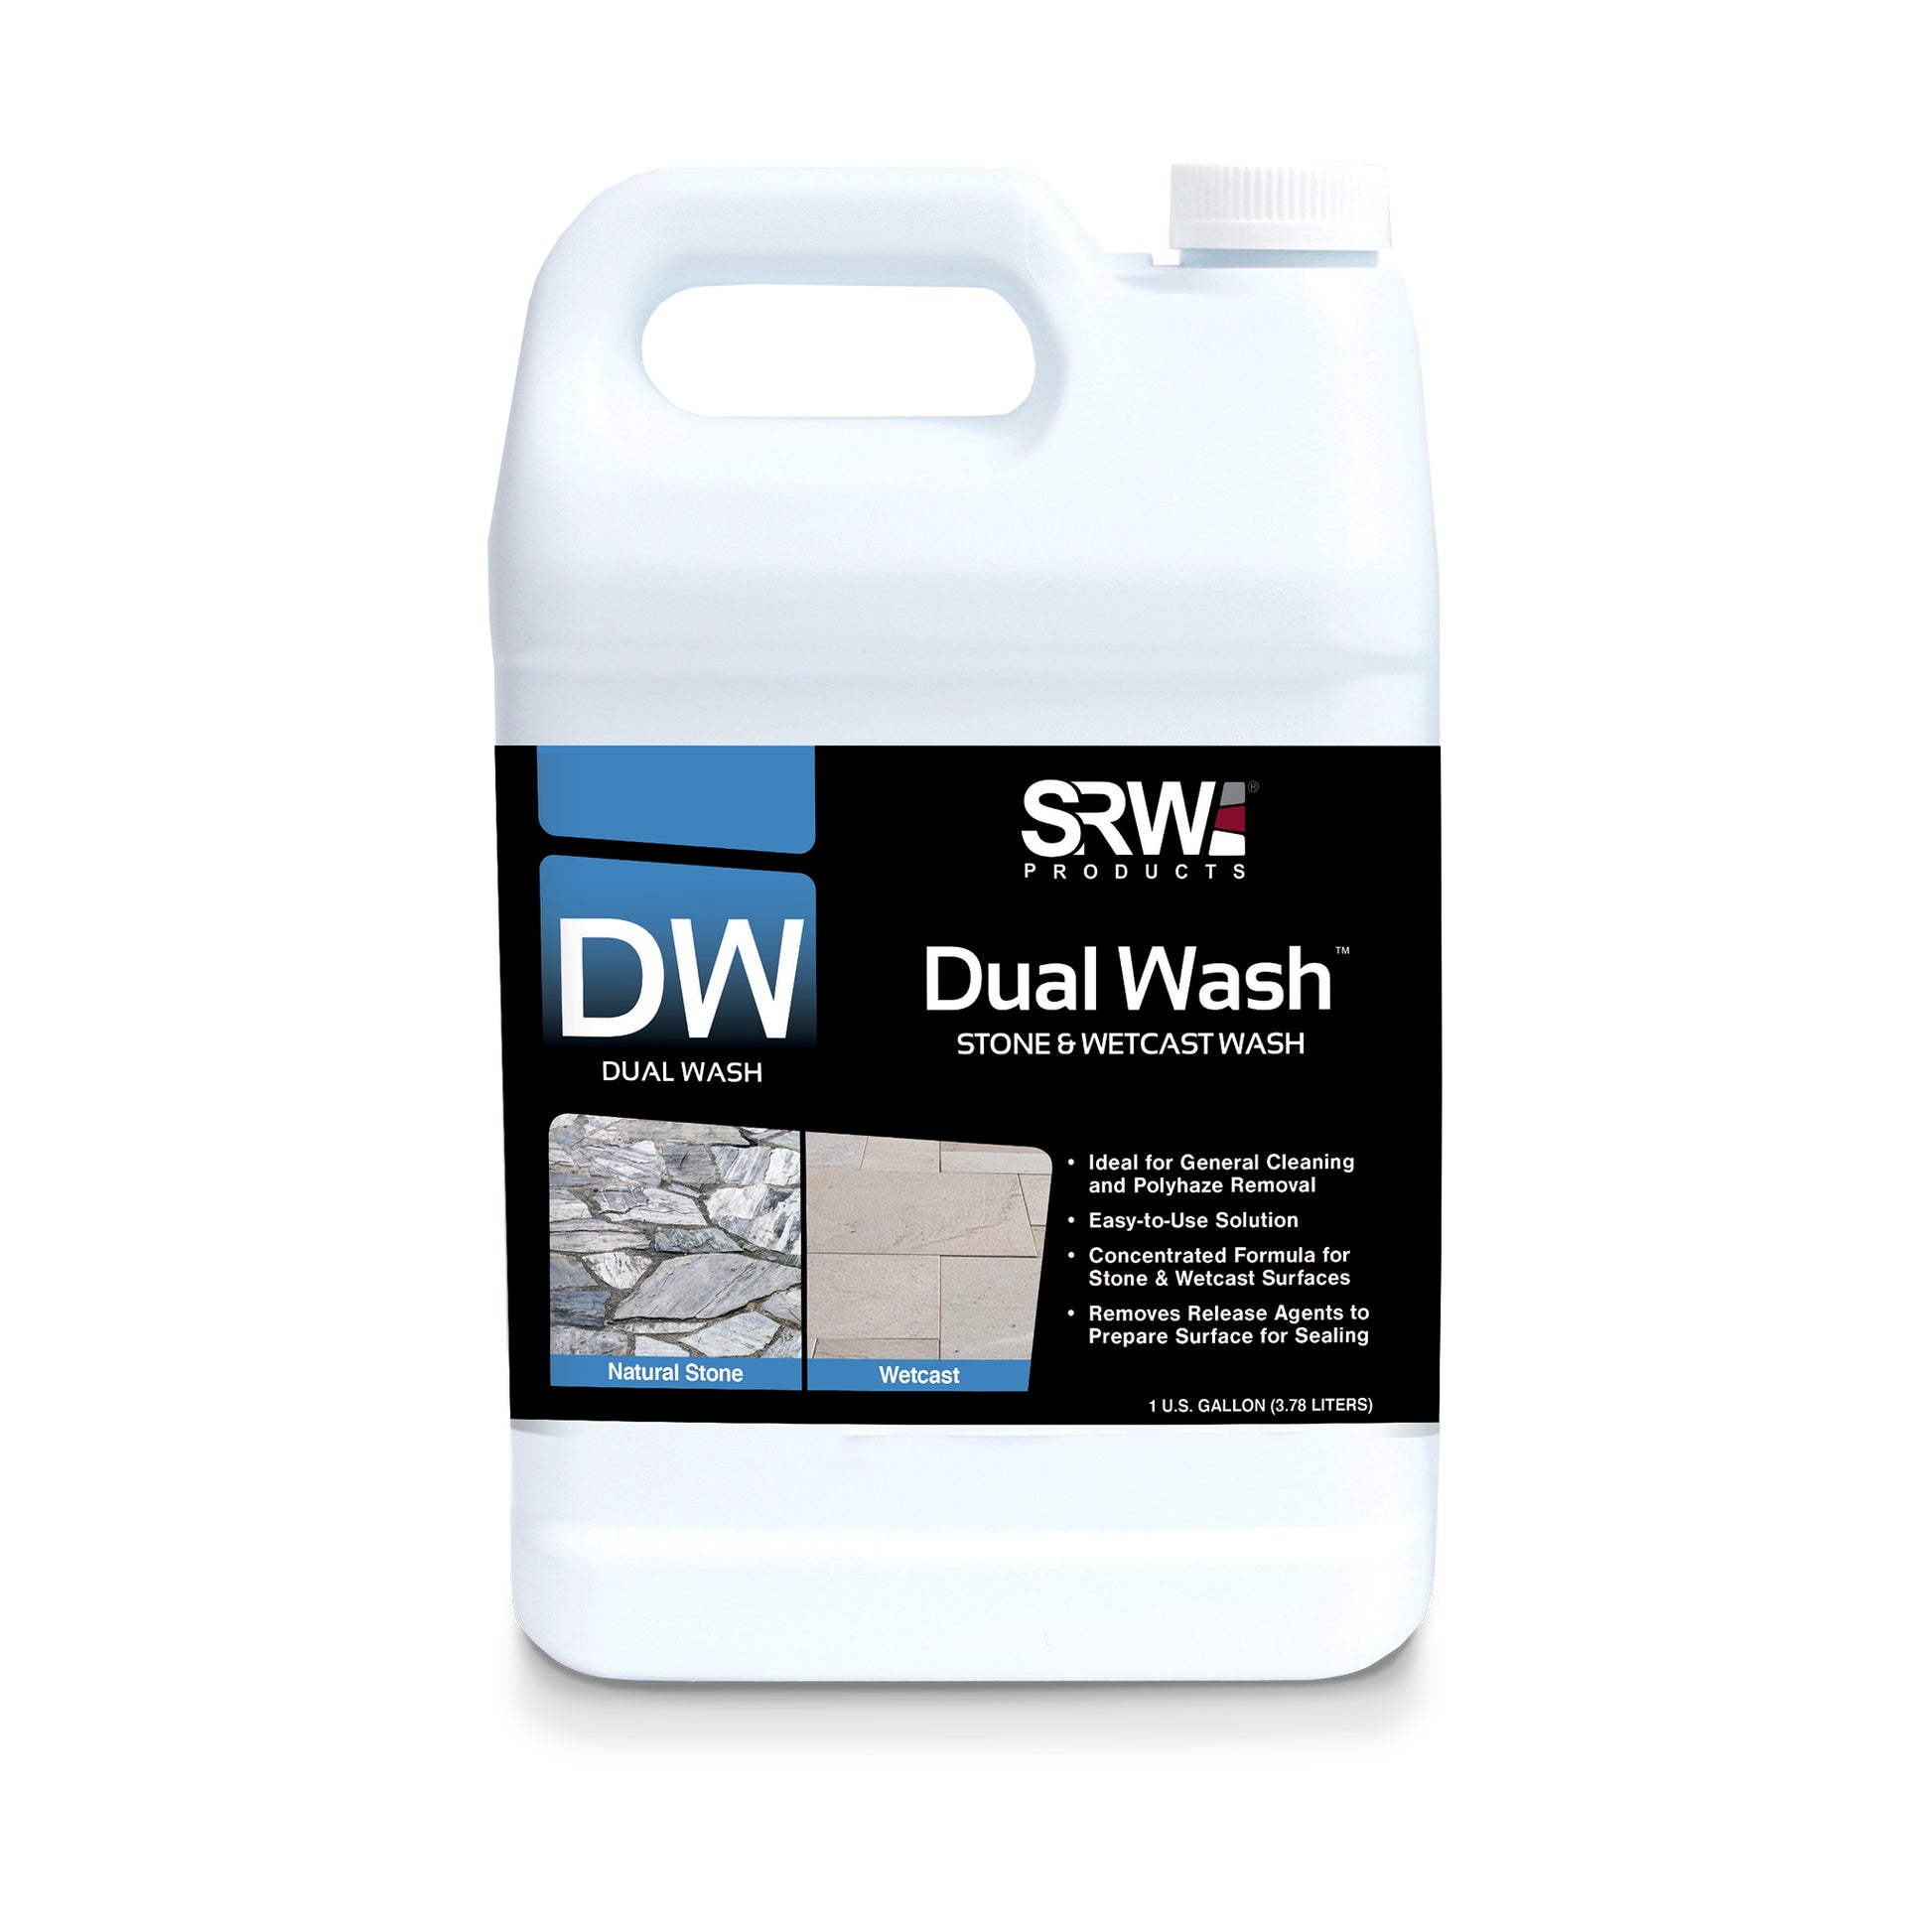 SRW Products DW Dual Wash